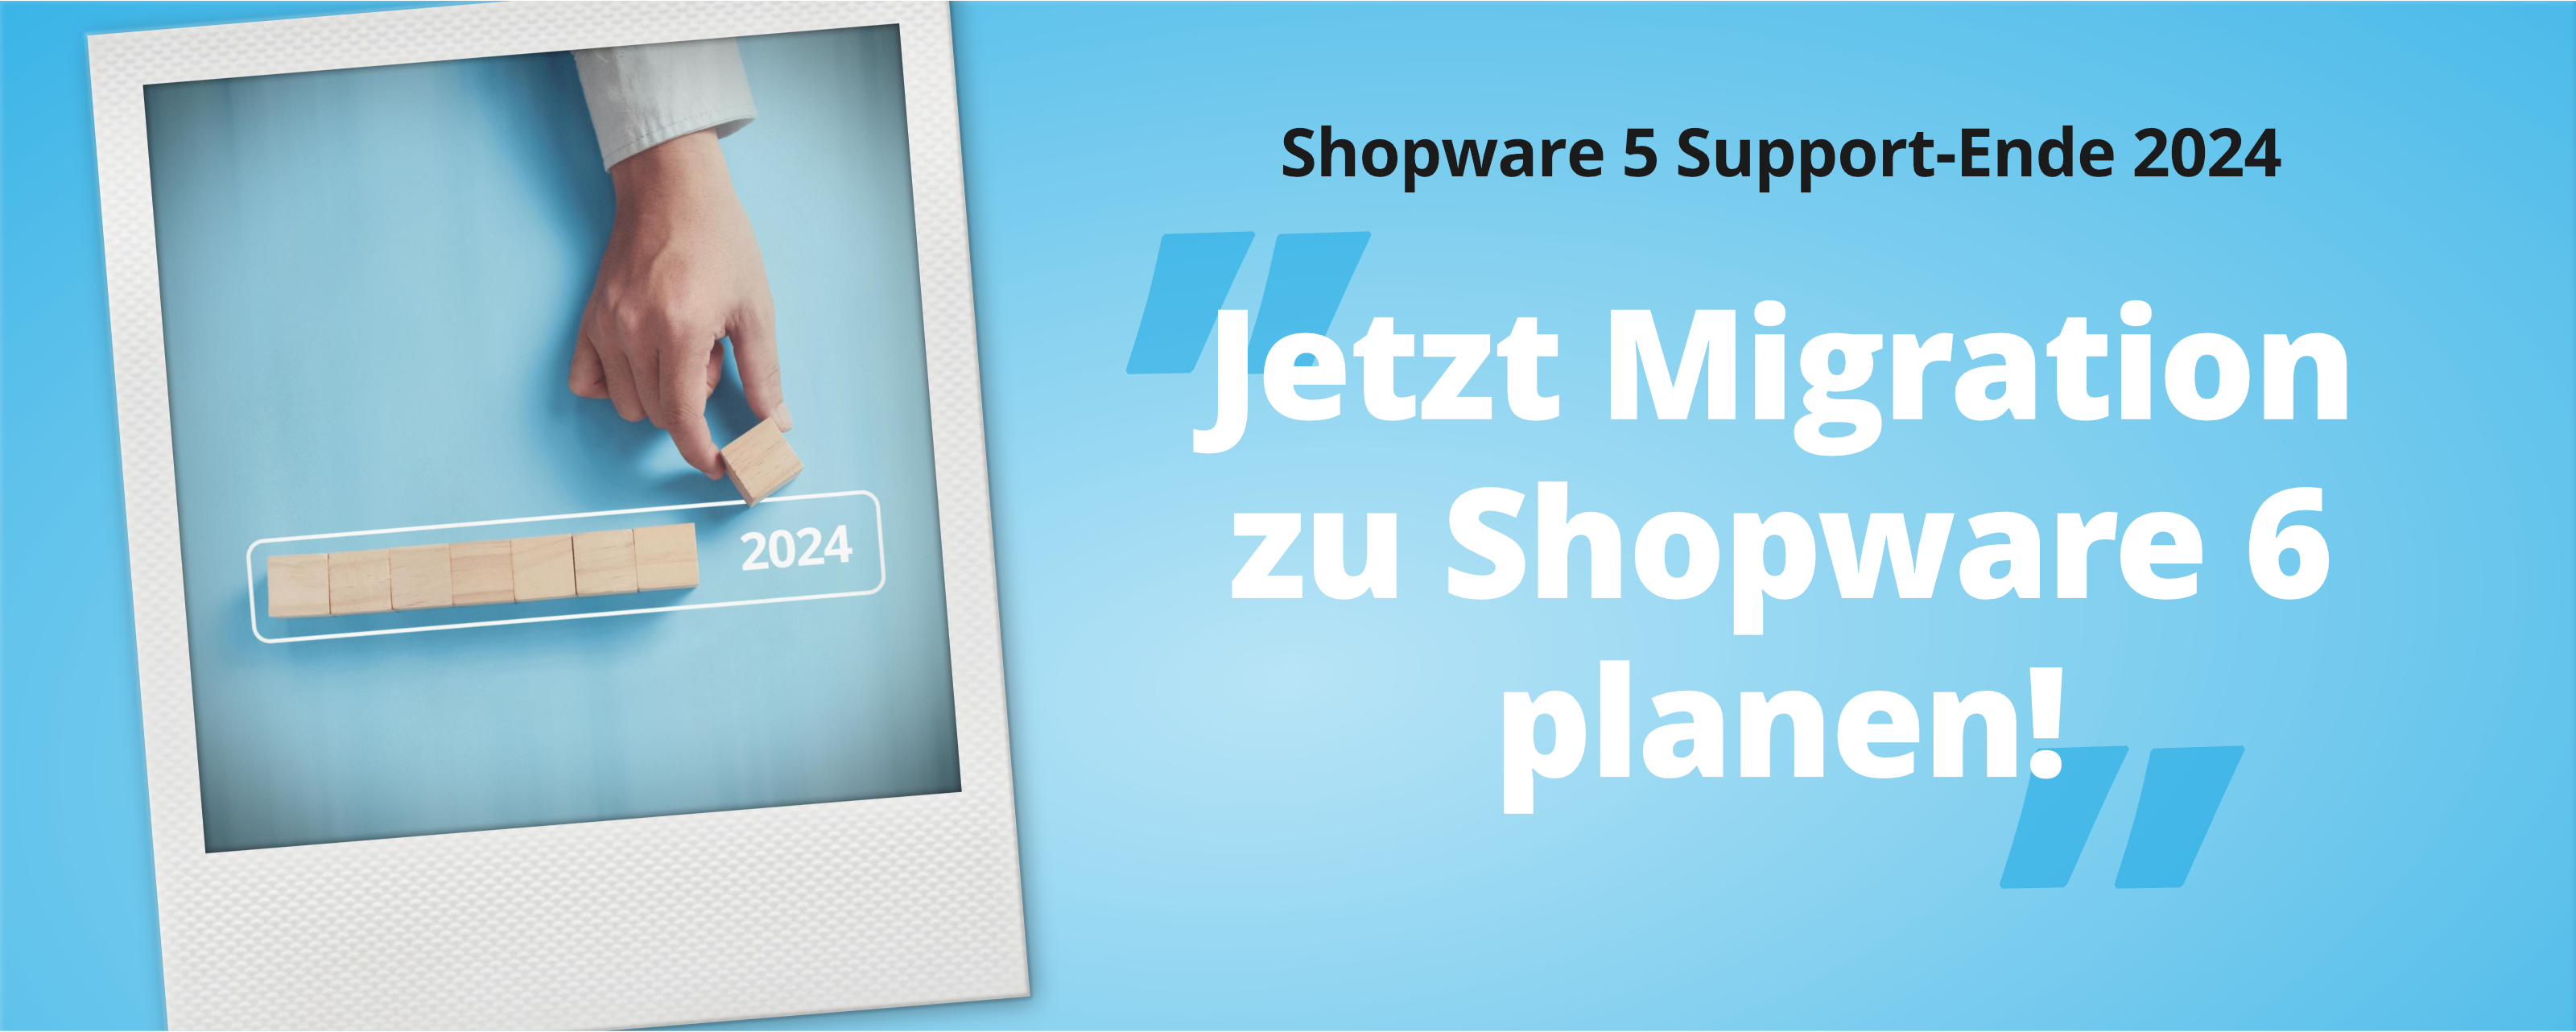 Migration von Shopware 5 zu Shopware 6